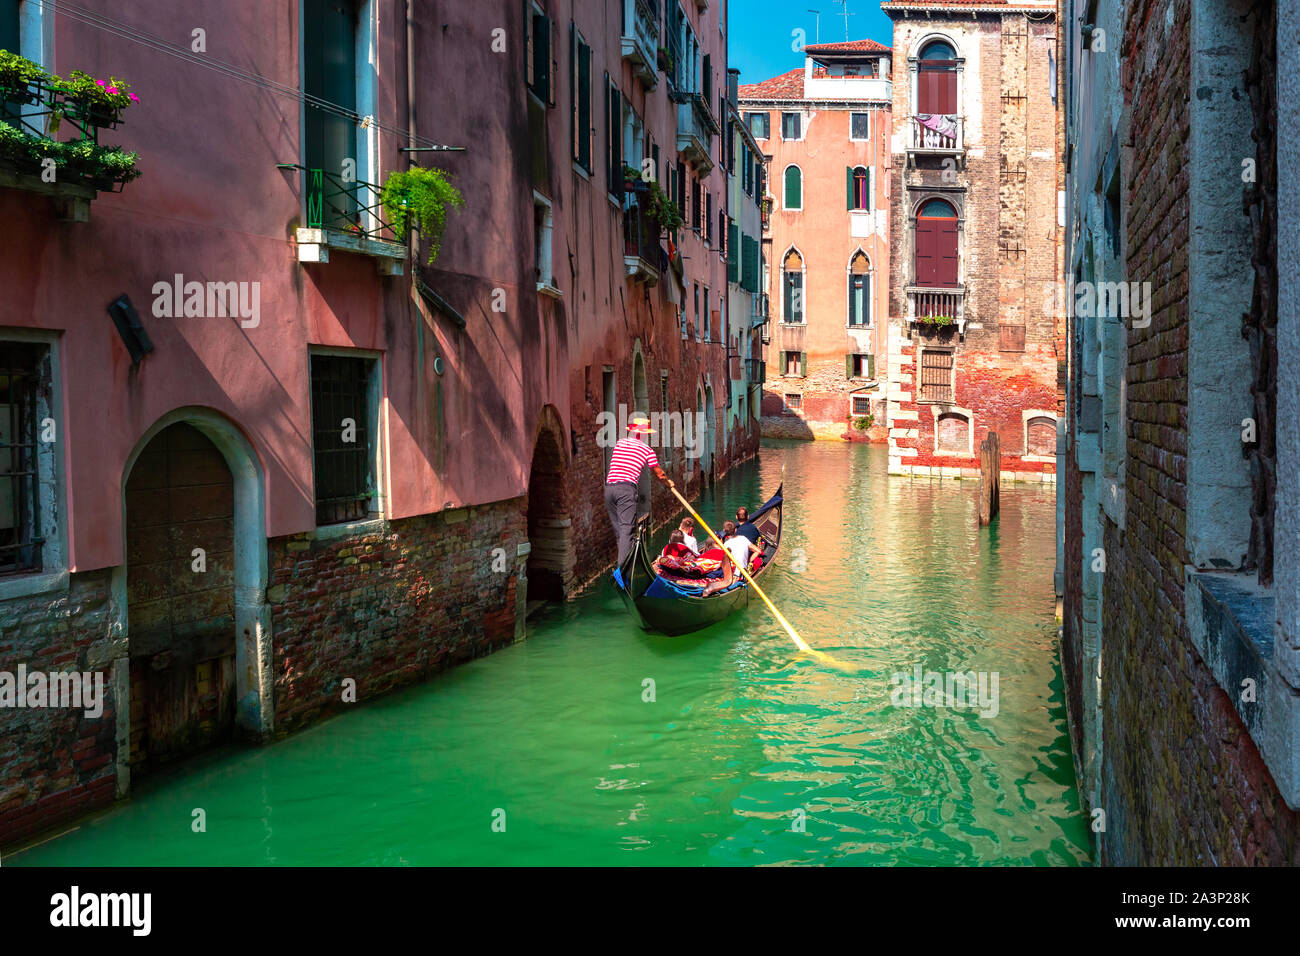 Gondolas on Canal in Venice, Italy Stock Photo